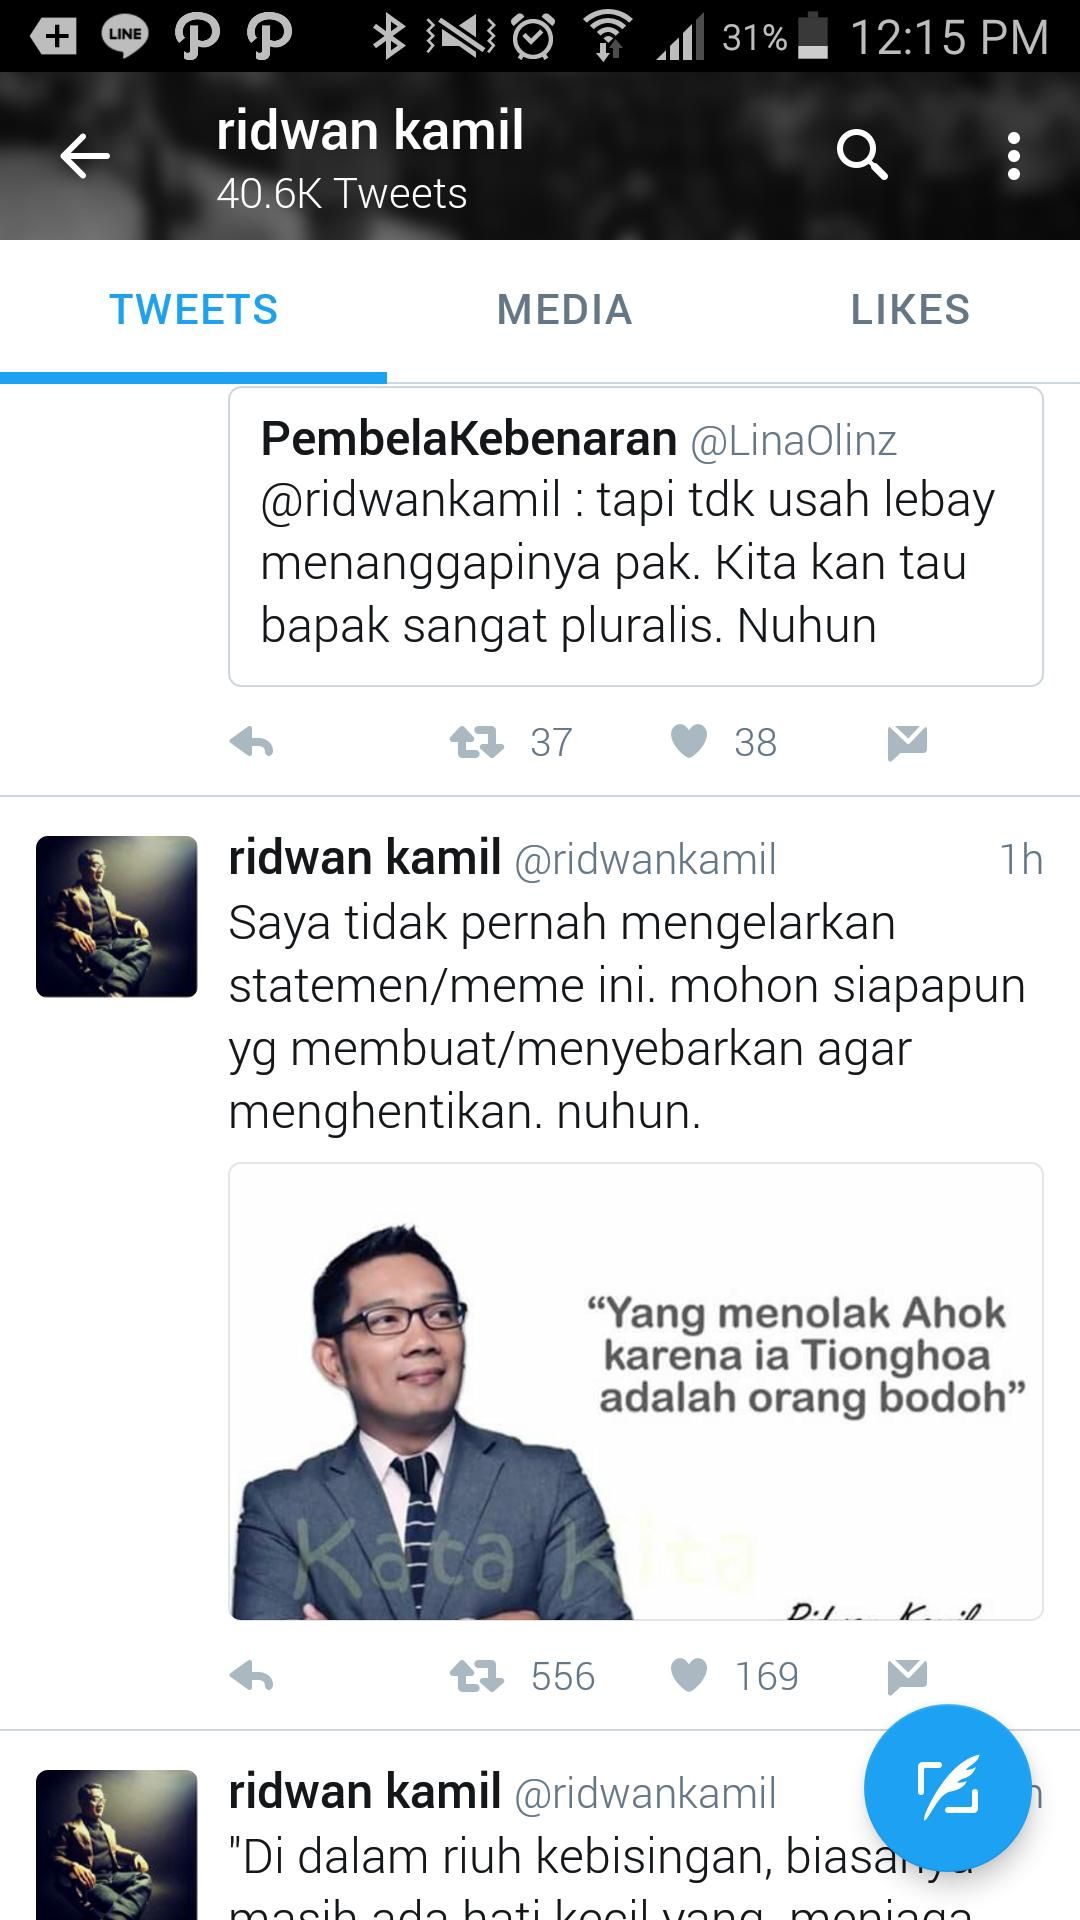 Ridwan Kamil Protes Dicatut Dalam Meme Dukung Ahok